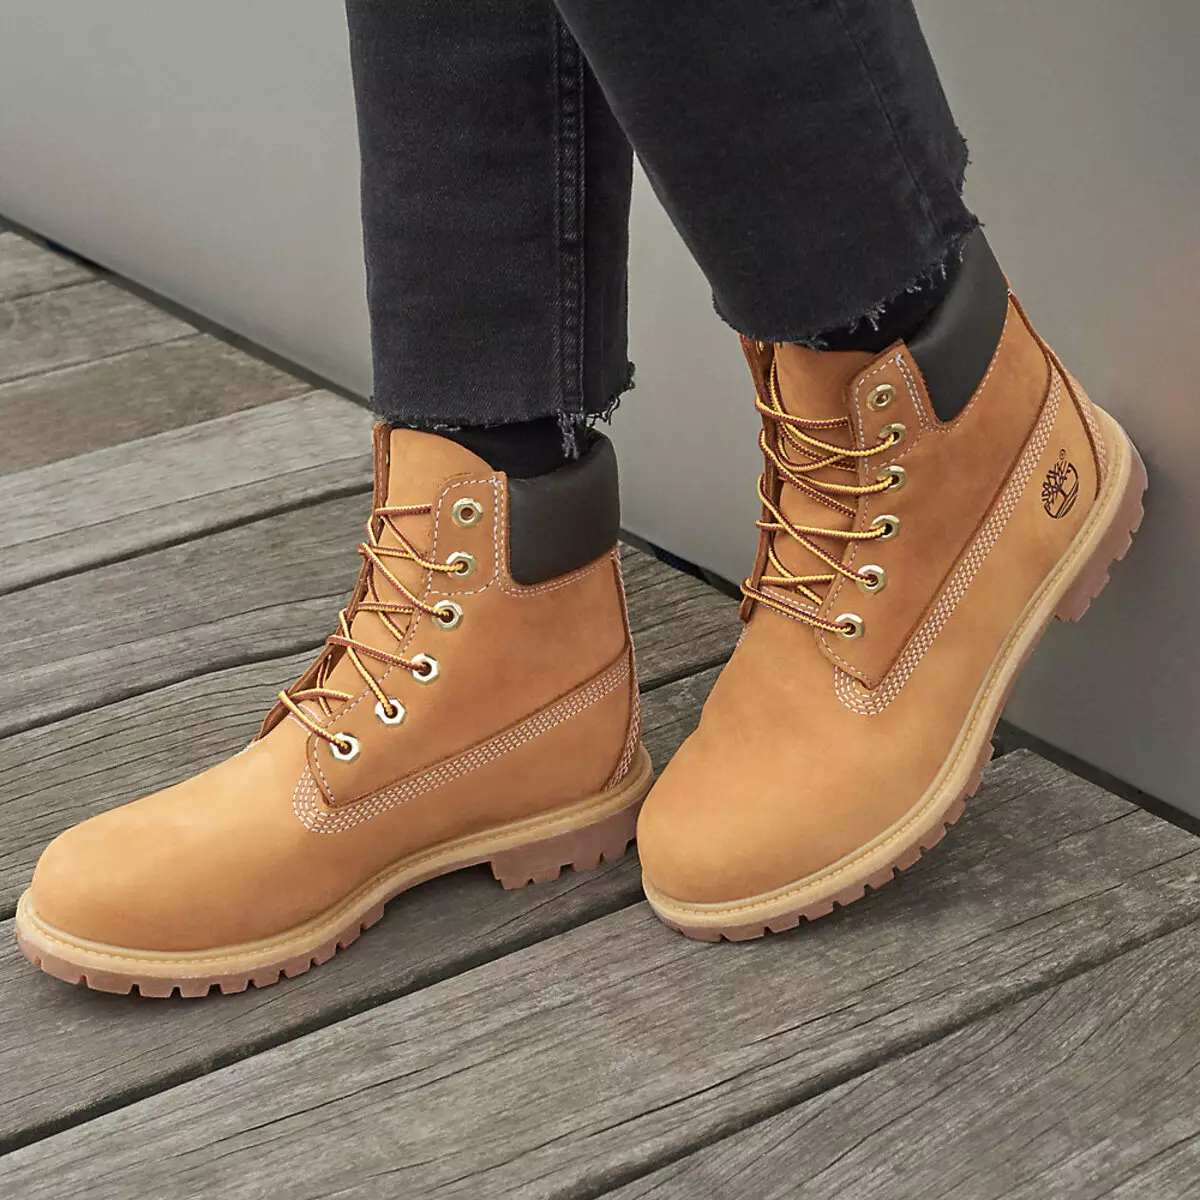 کفش های زمستانی زنان Timberland (42 عکس): چکمه های خز طبیعی، کفش های ورزشی گرم و دیگران. چه چیزی دختران خود را در زمستان می پوشانند؟ 1697_21